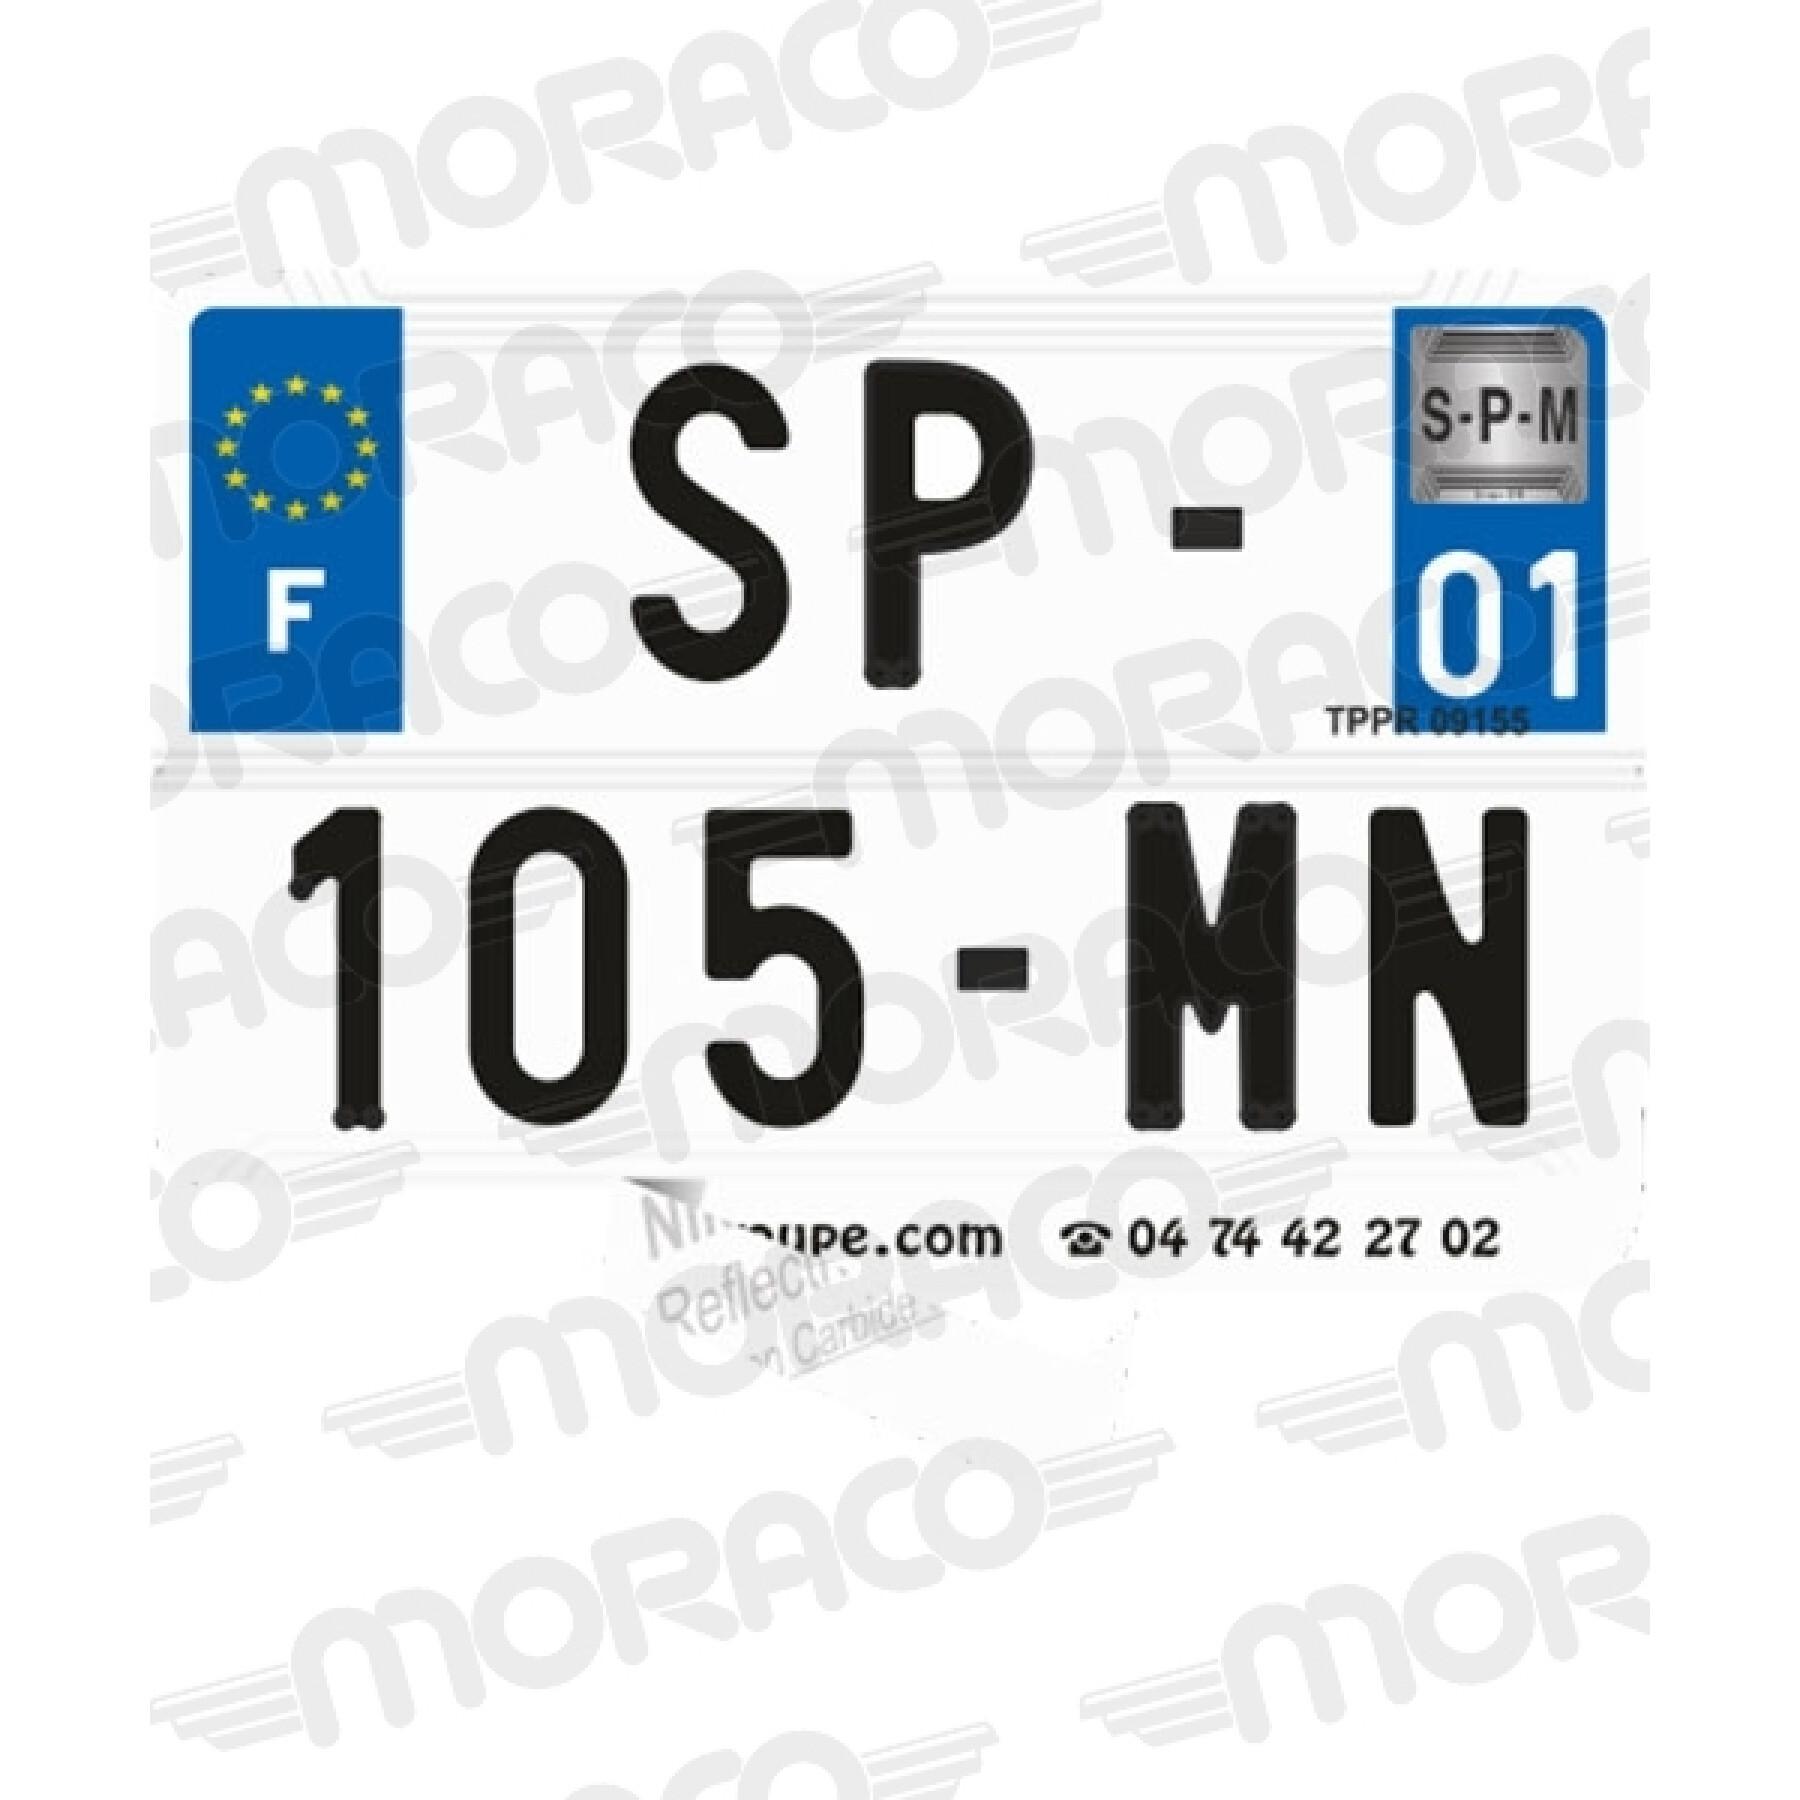 Streifen Kennzeichen Motorrad Auto lang SPM NR2 (F) - Abdeckplanen